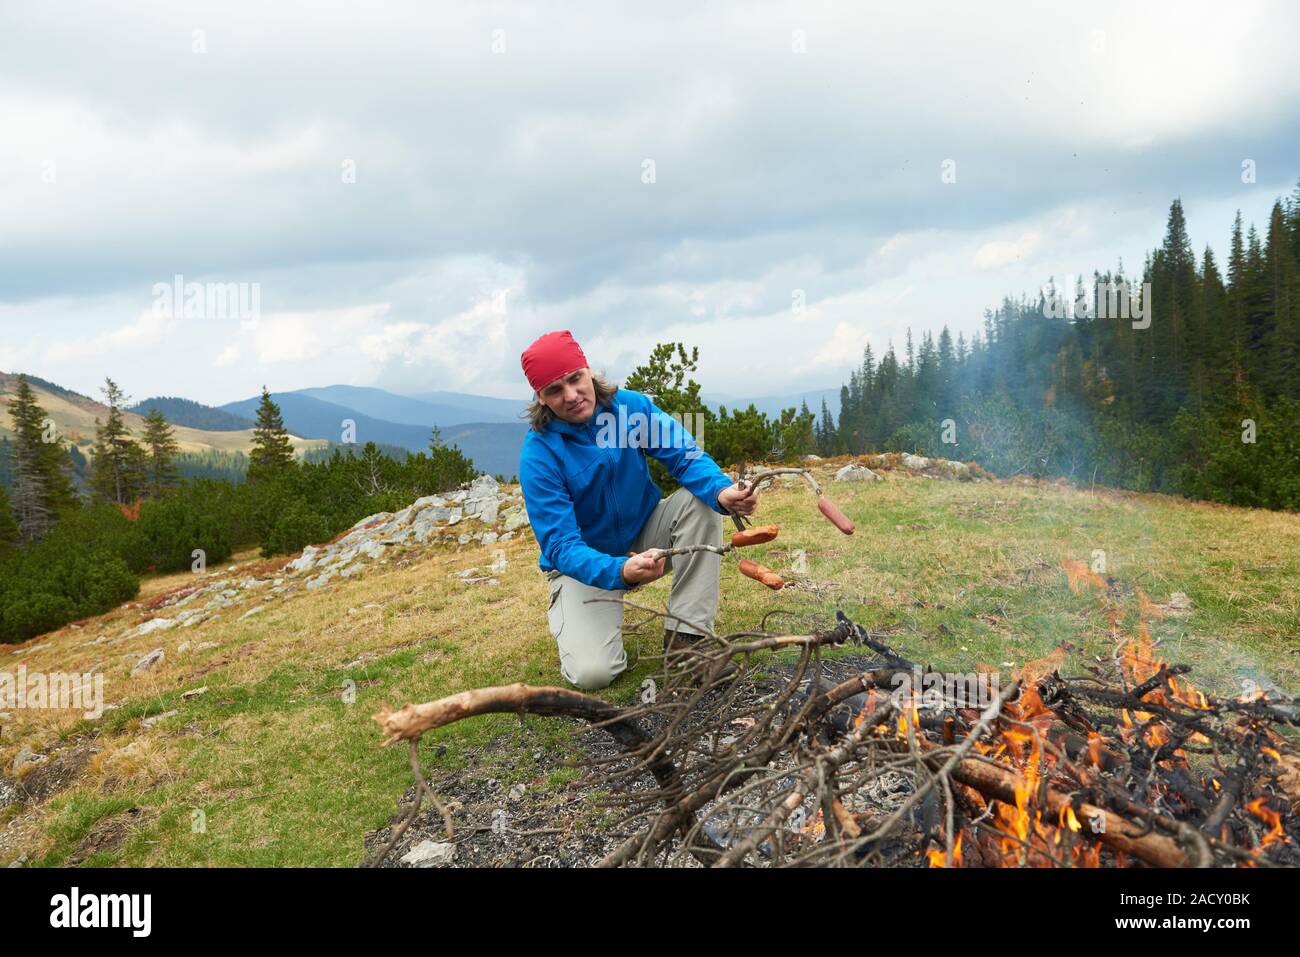 Escursionismo uomo preparare gustose salsicce sul fuoco Foto Stock